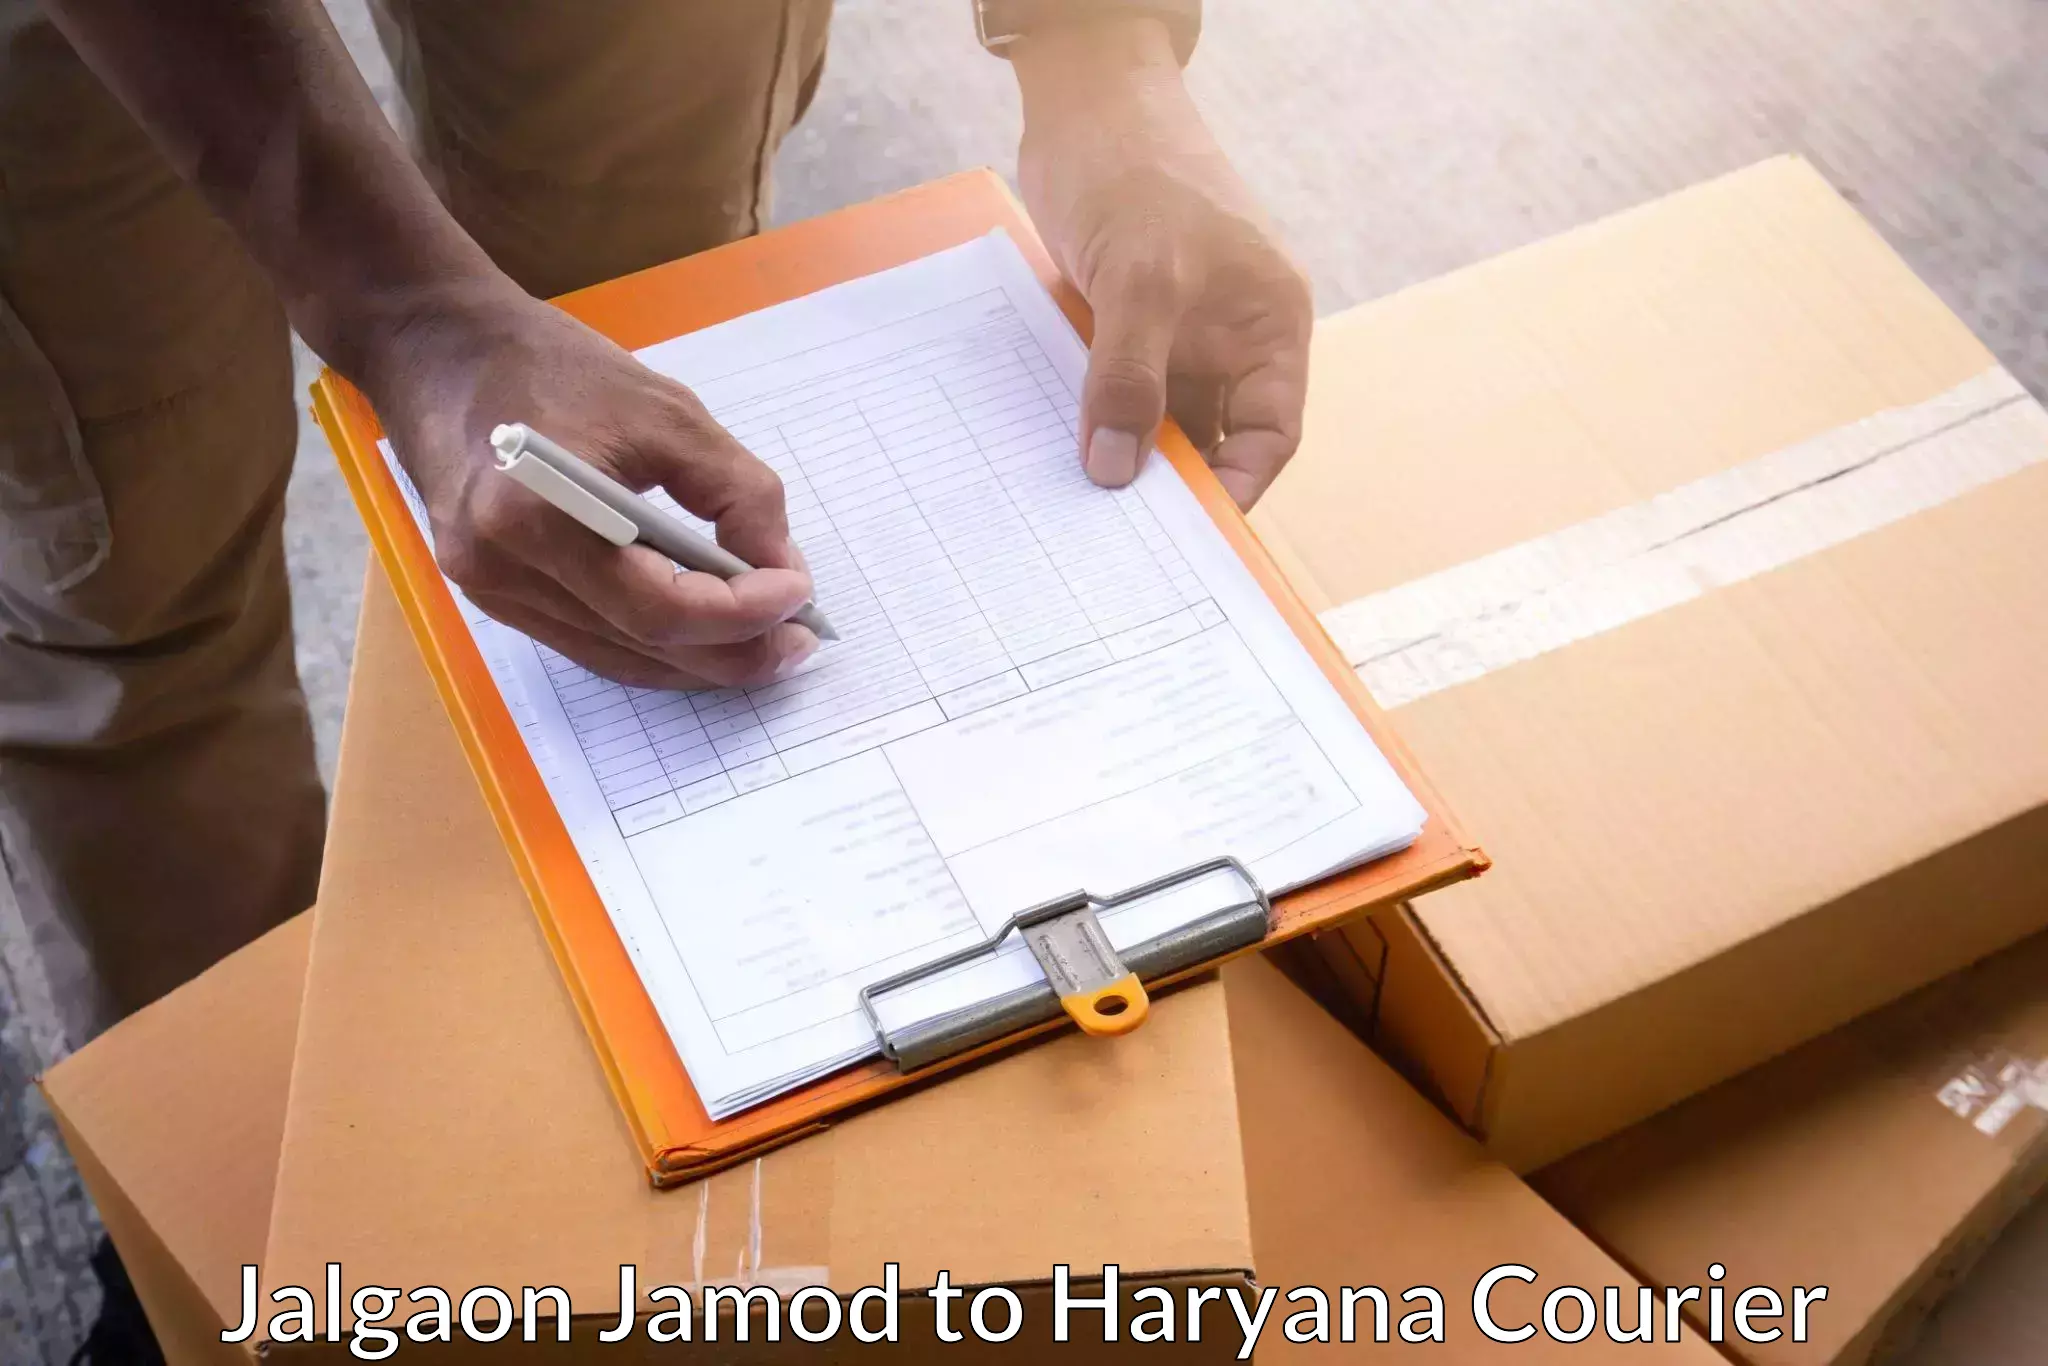 International parcel service Jalgaon Jamod to Ambala